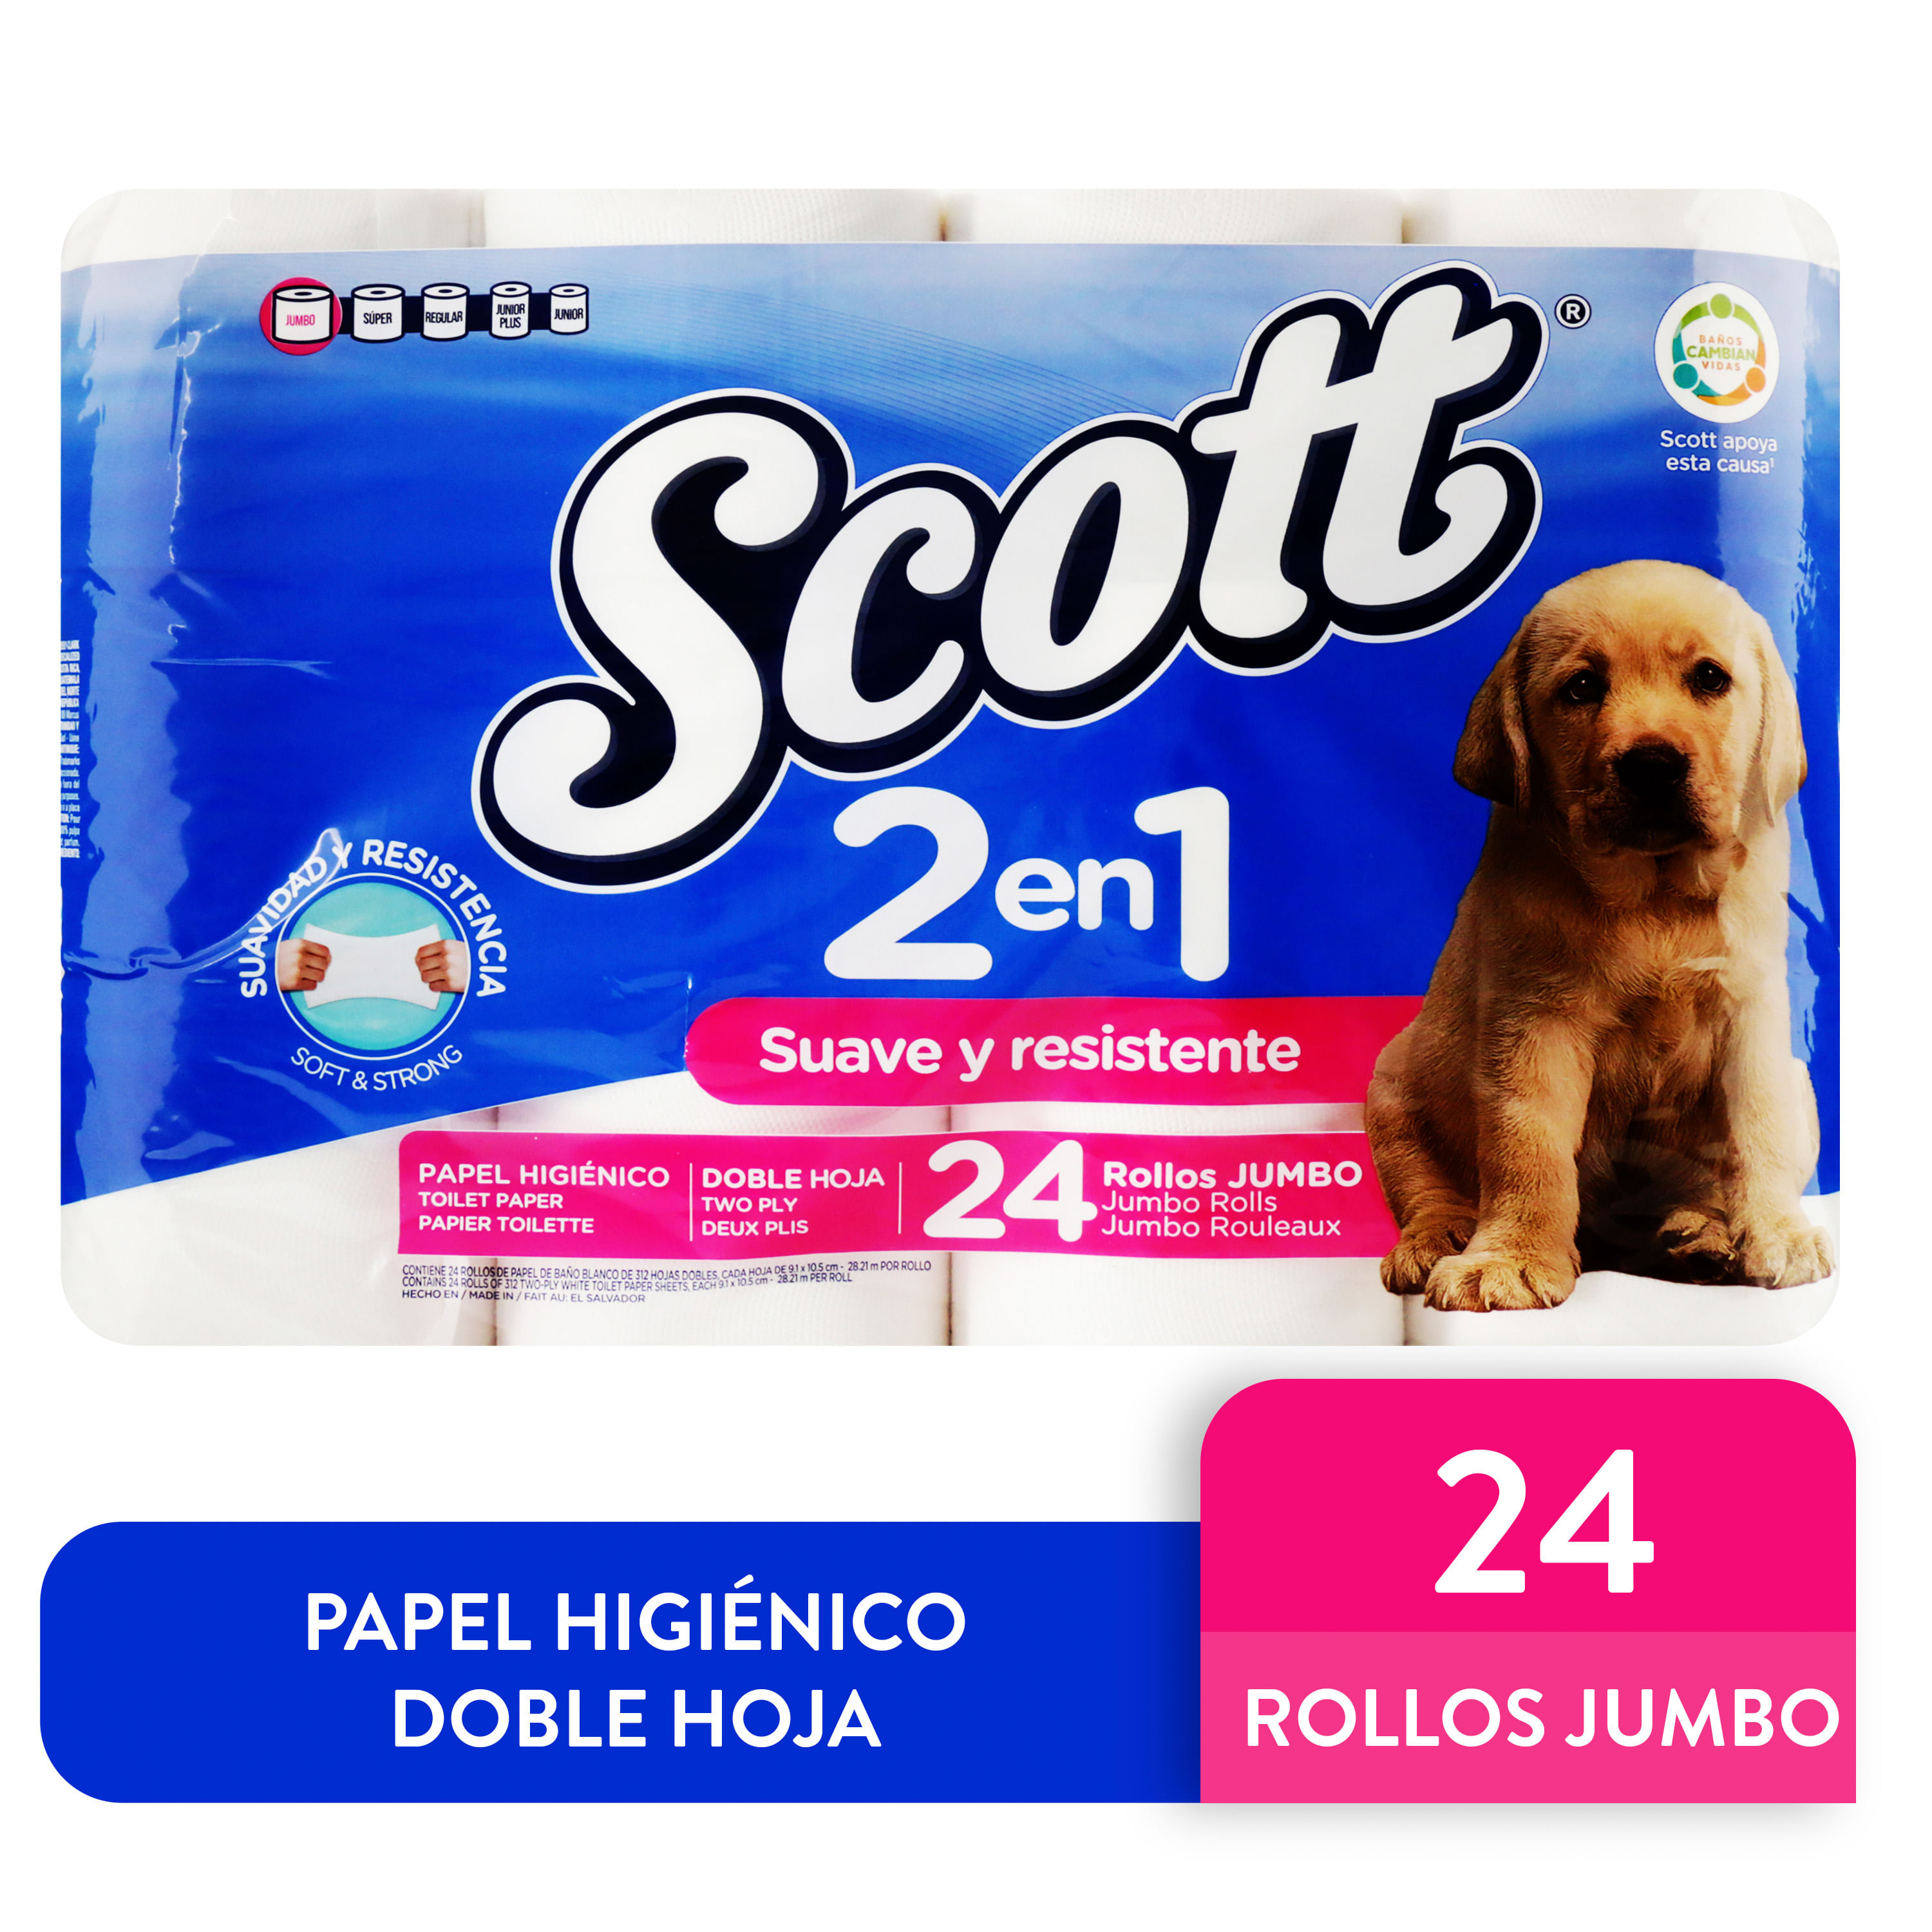 Comprar Papel Higiénico Scott 2EN1 Doble Hoja - 24 Rollos